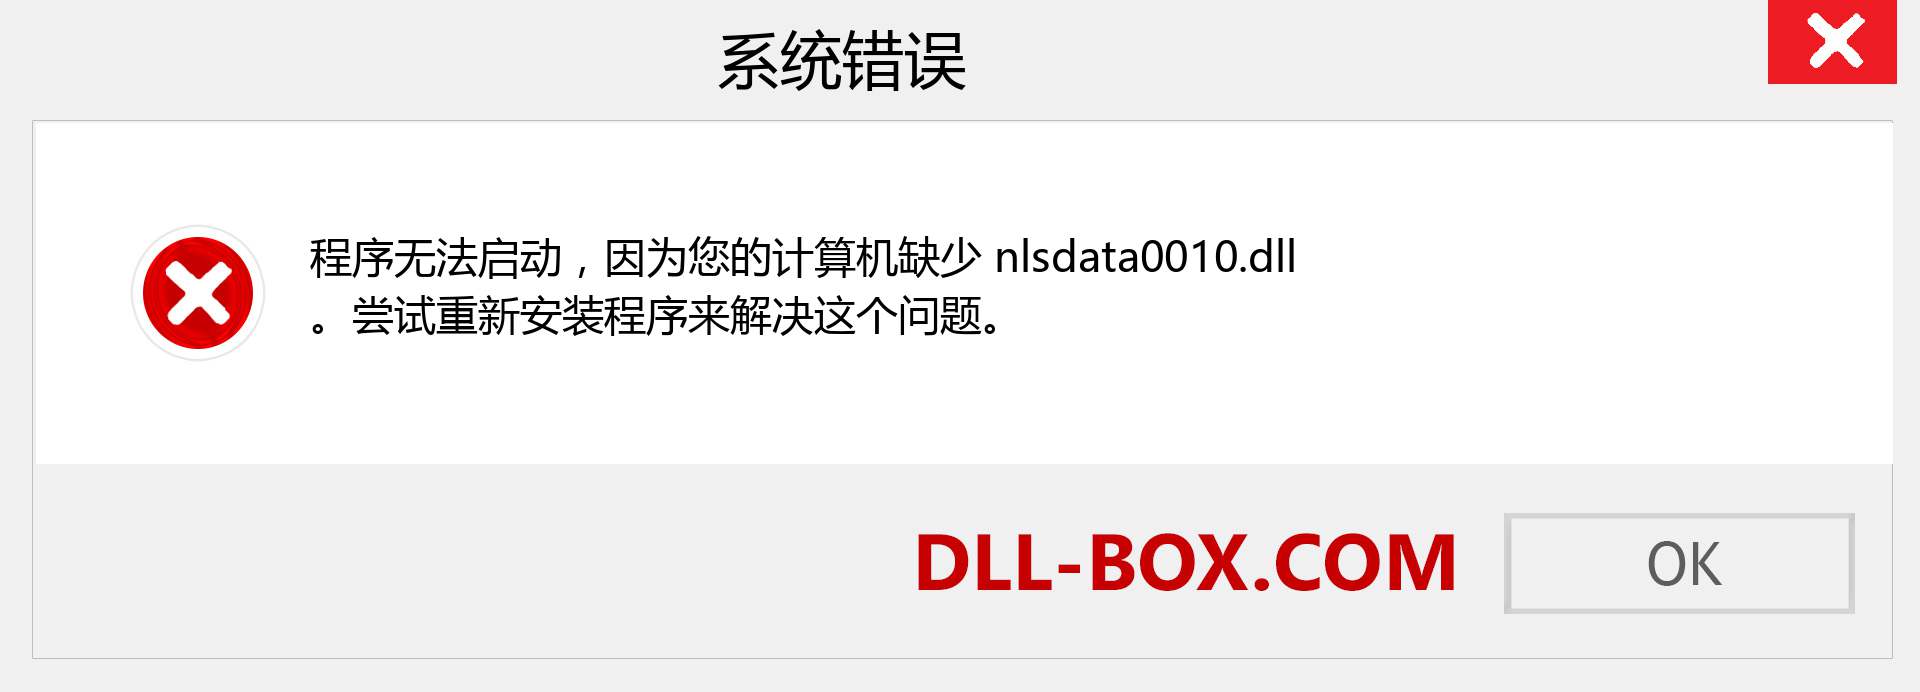 nlsdata0010.dll 文件丢失？。 适用于 Windows 7、8、10 的下载 - 修复 Windows、照片、图像上的 nlsdata0010 dll 丢失错误